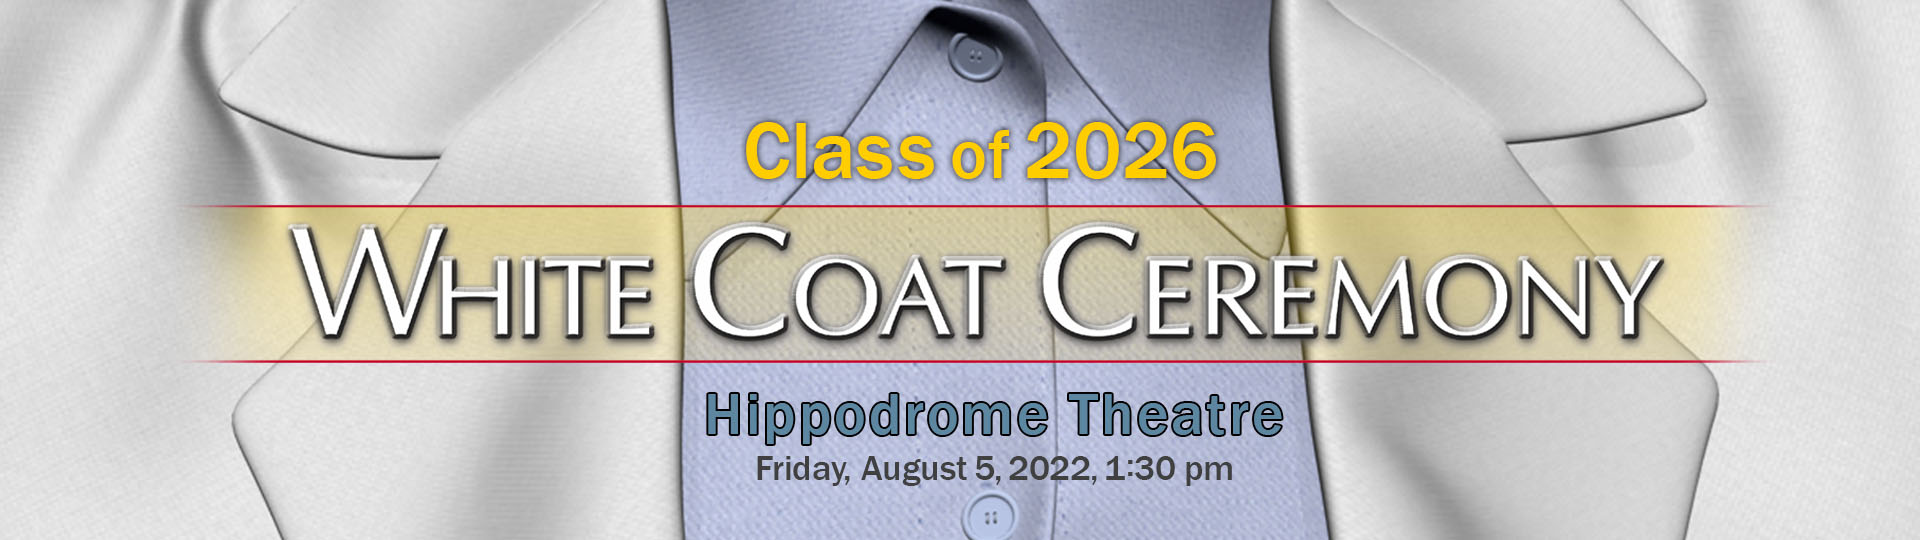 Class of 2026 White Coat Ceremony